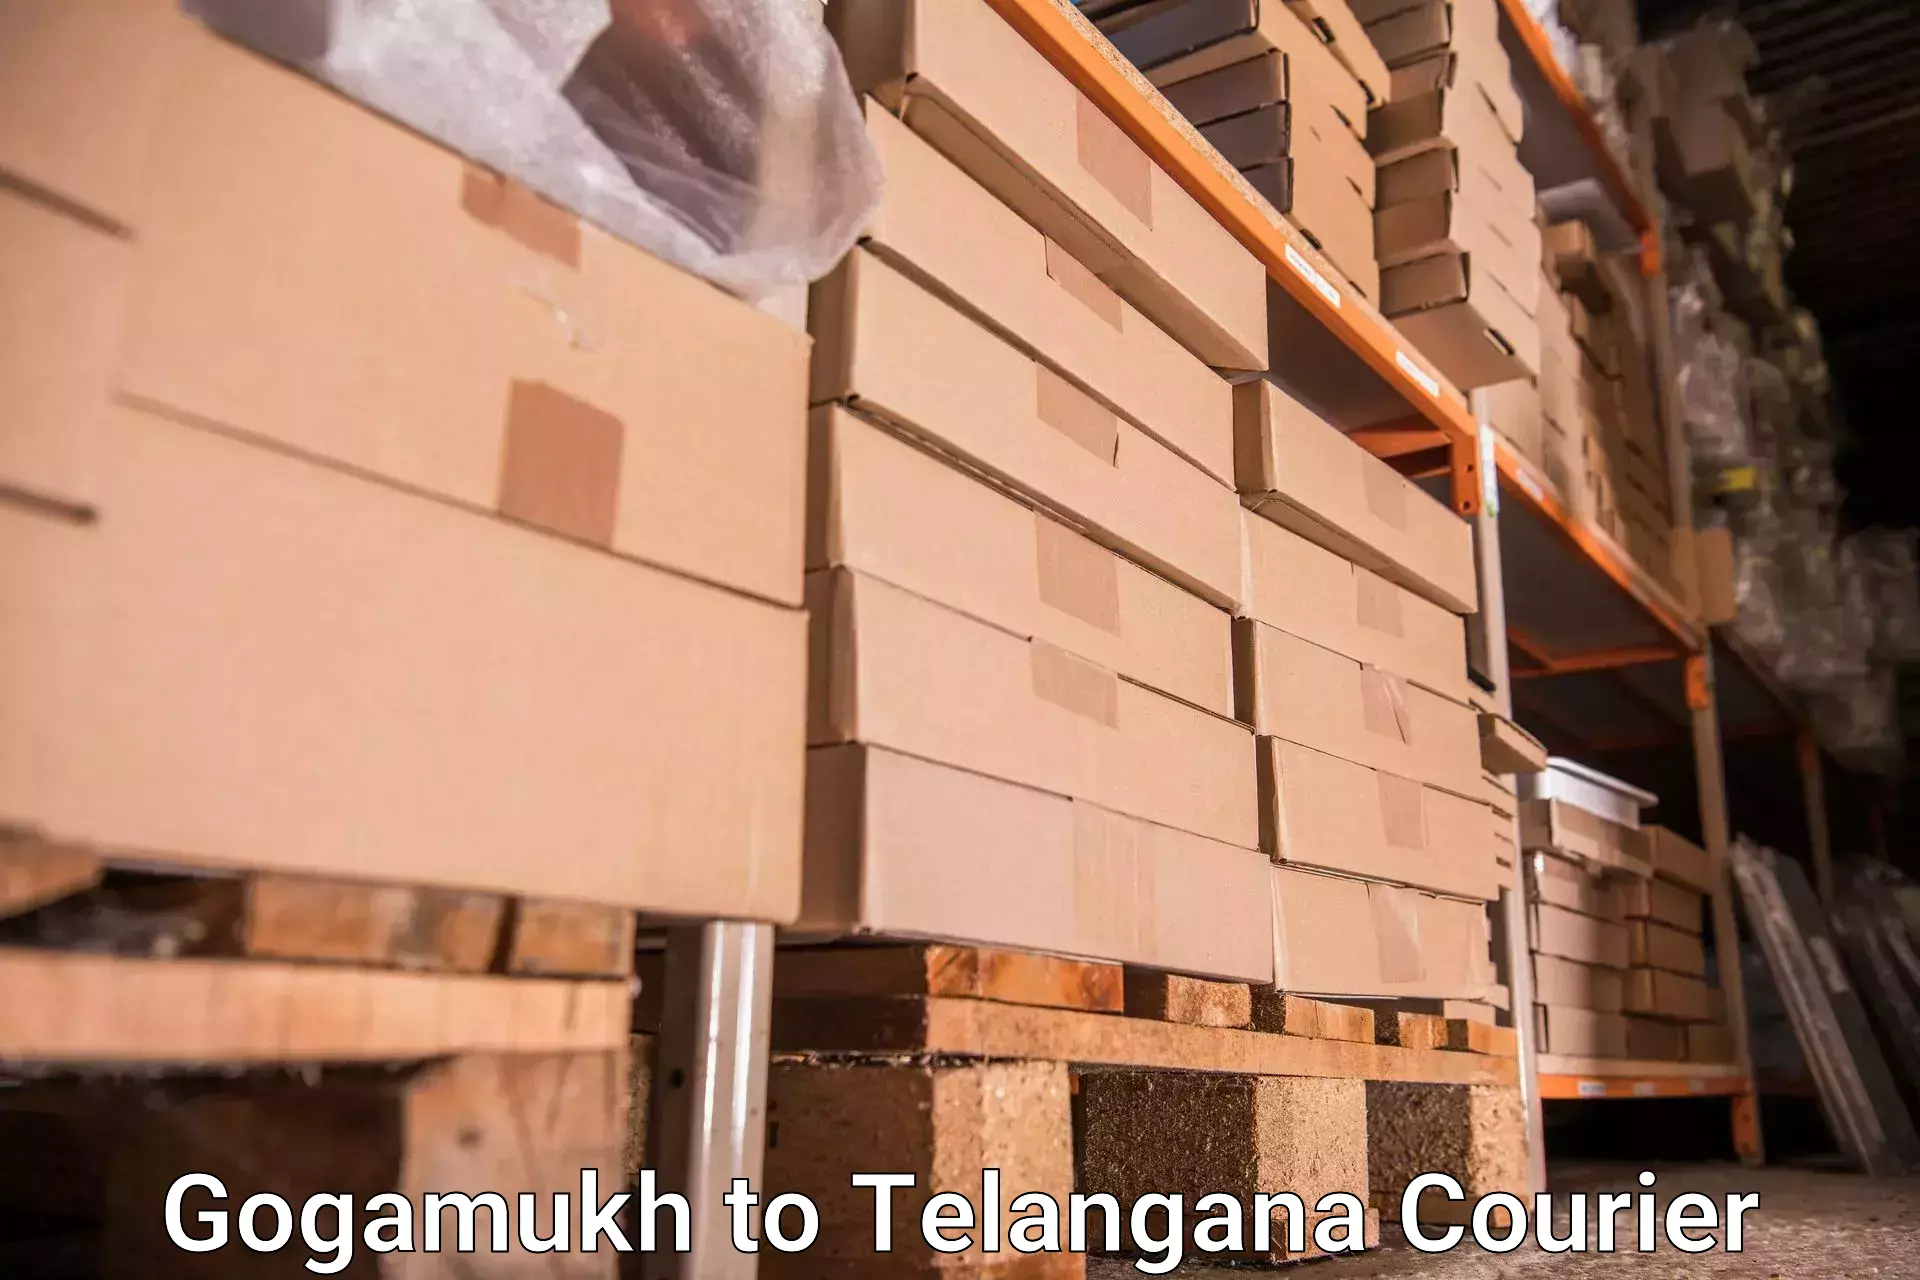 Luggage shipment processing Gogamukh to IIT Hyderabad